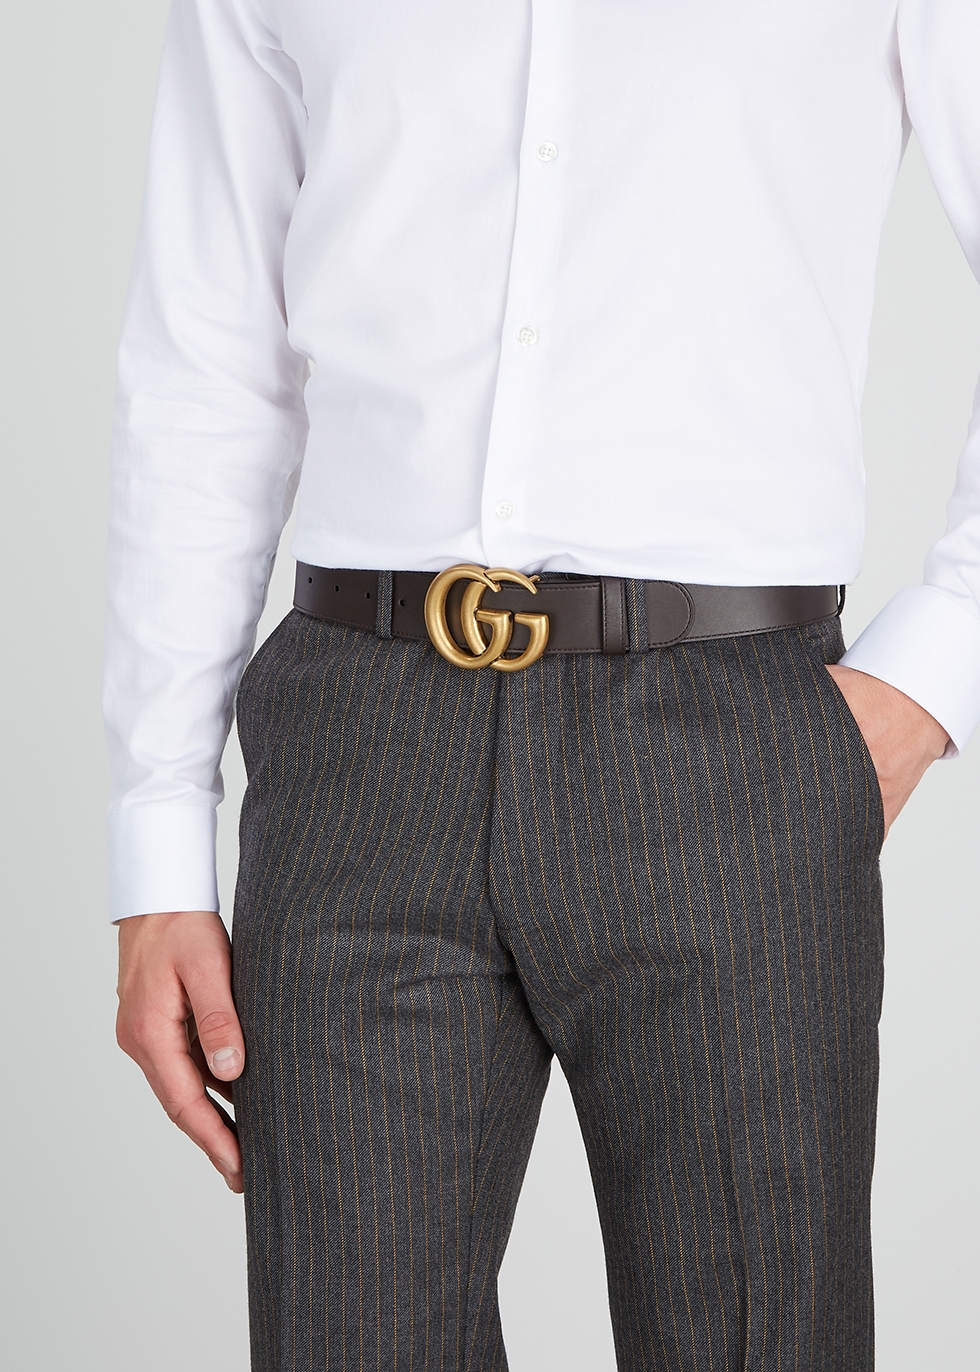 Gucci Men's Belts - Harvey Nichols